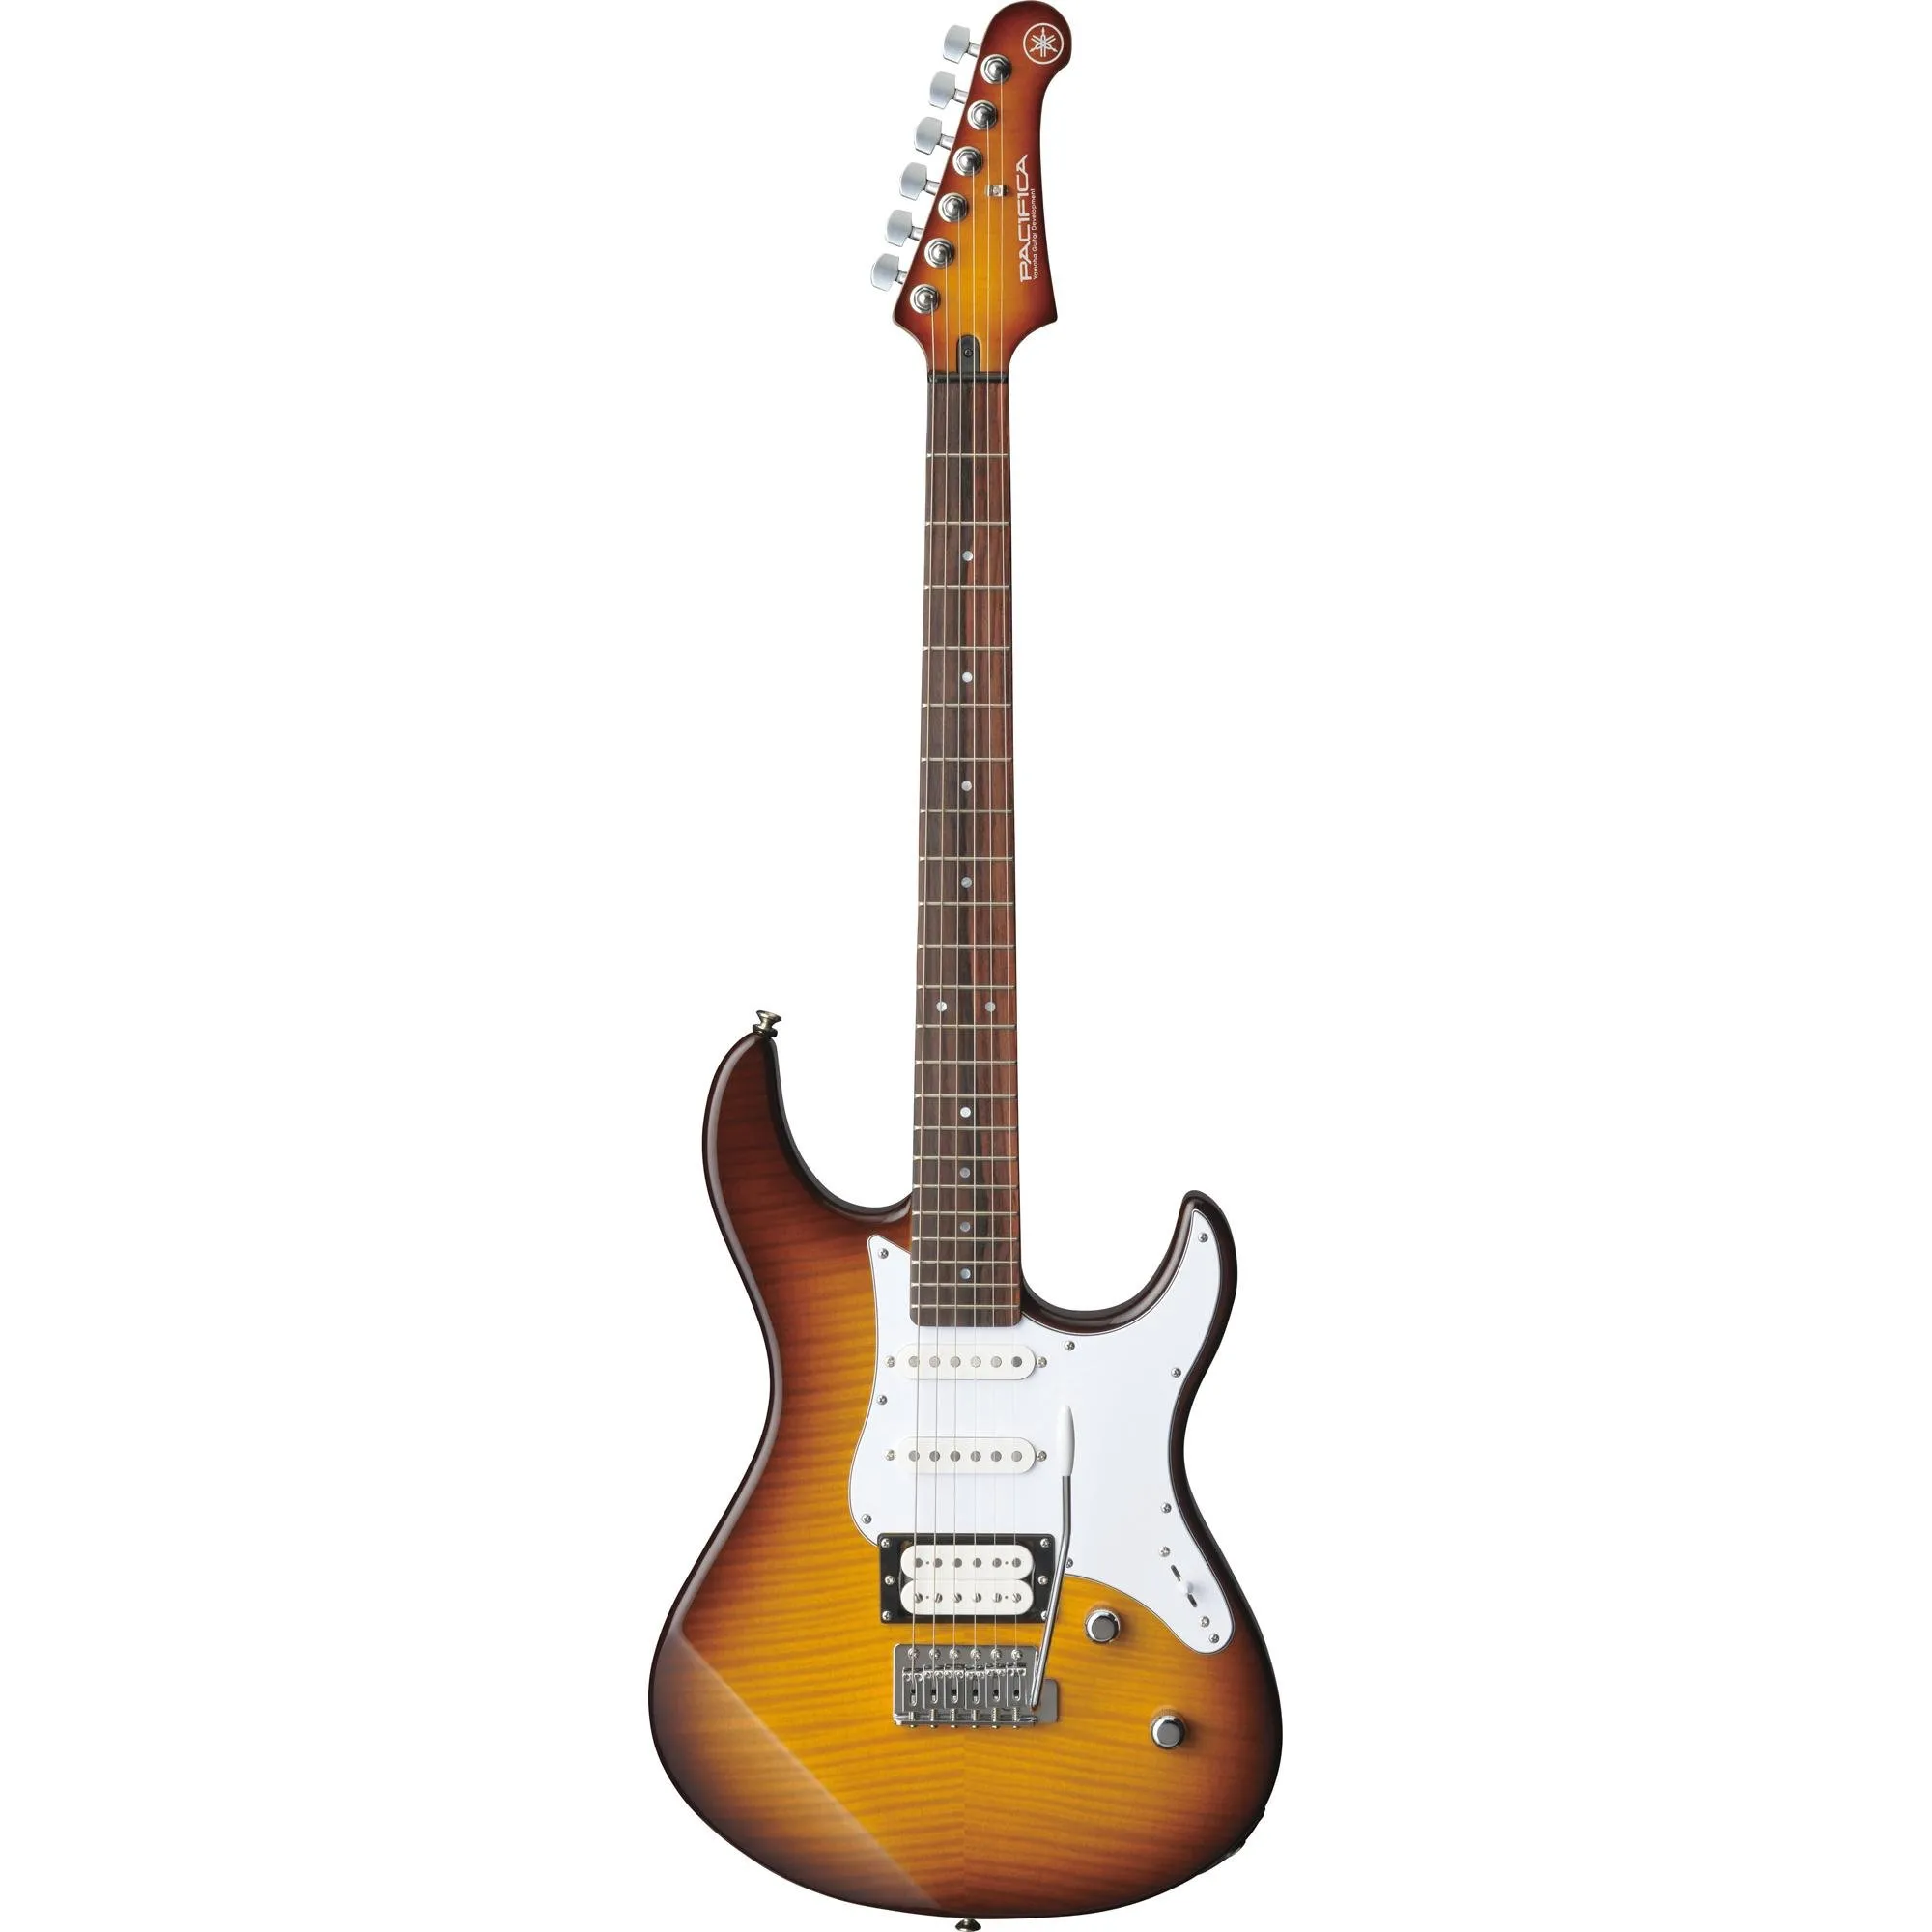 Guitarra Yamaha Pacifica 212VFM Tobacco Brown Sunburst por 0,00 à vista no boleto/pix ou parcele em até 1x sem juros. Compre na loja Mundomax!